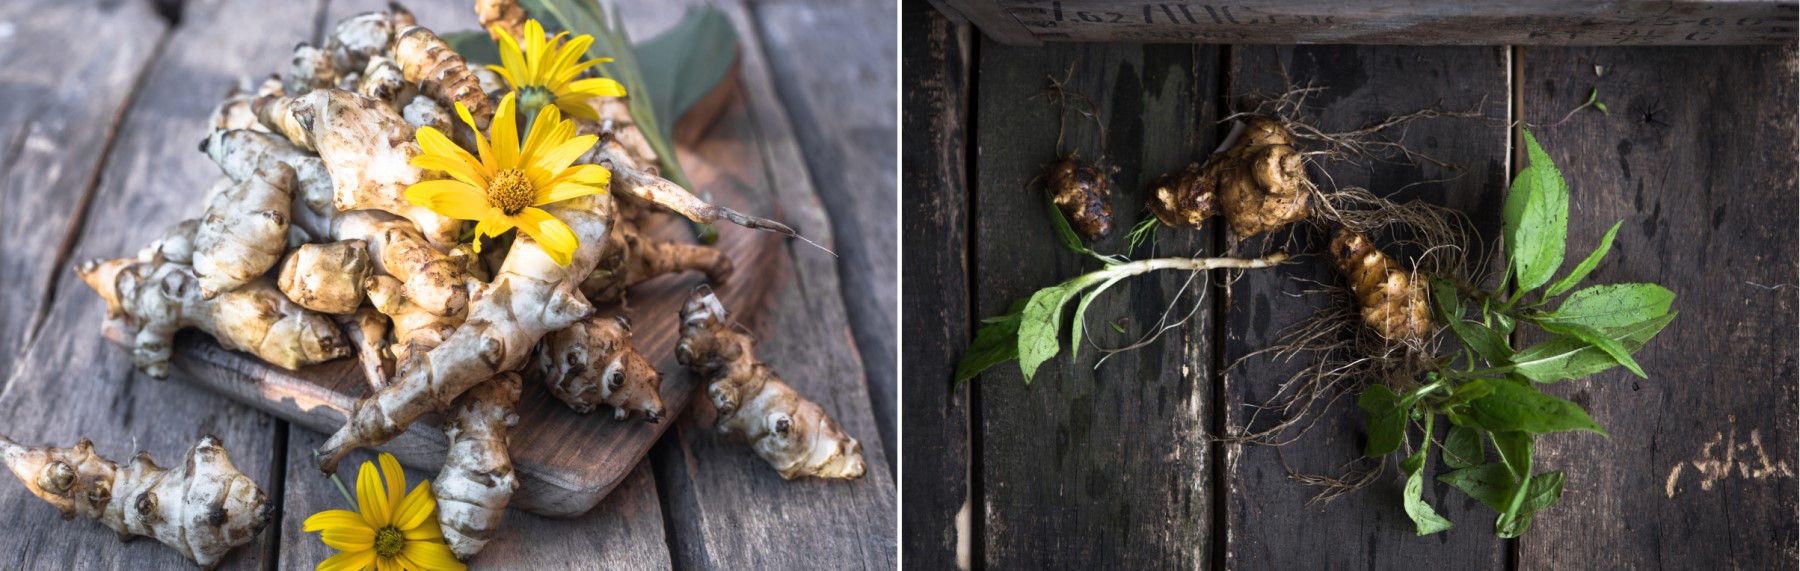 Topinambur, Slnečnica hľuznatá, jeruzalemský artičok - hľuza, rastlina, listy, kvet